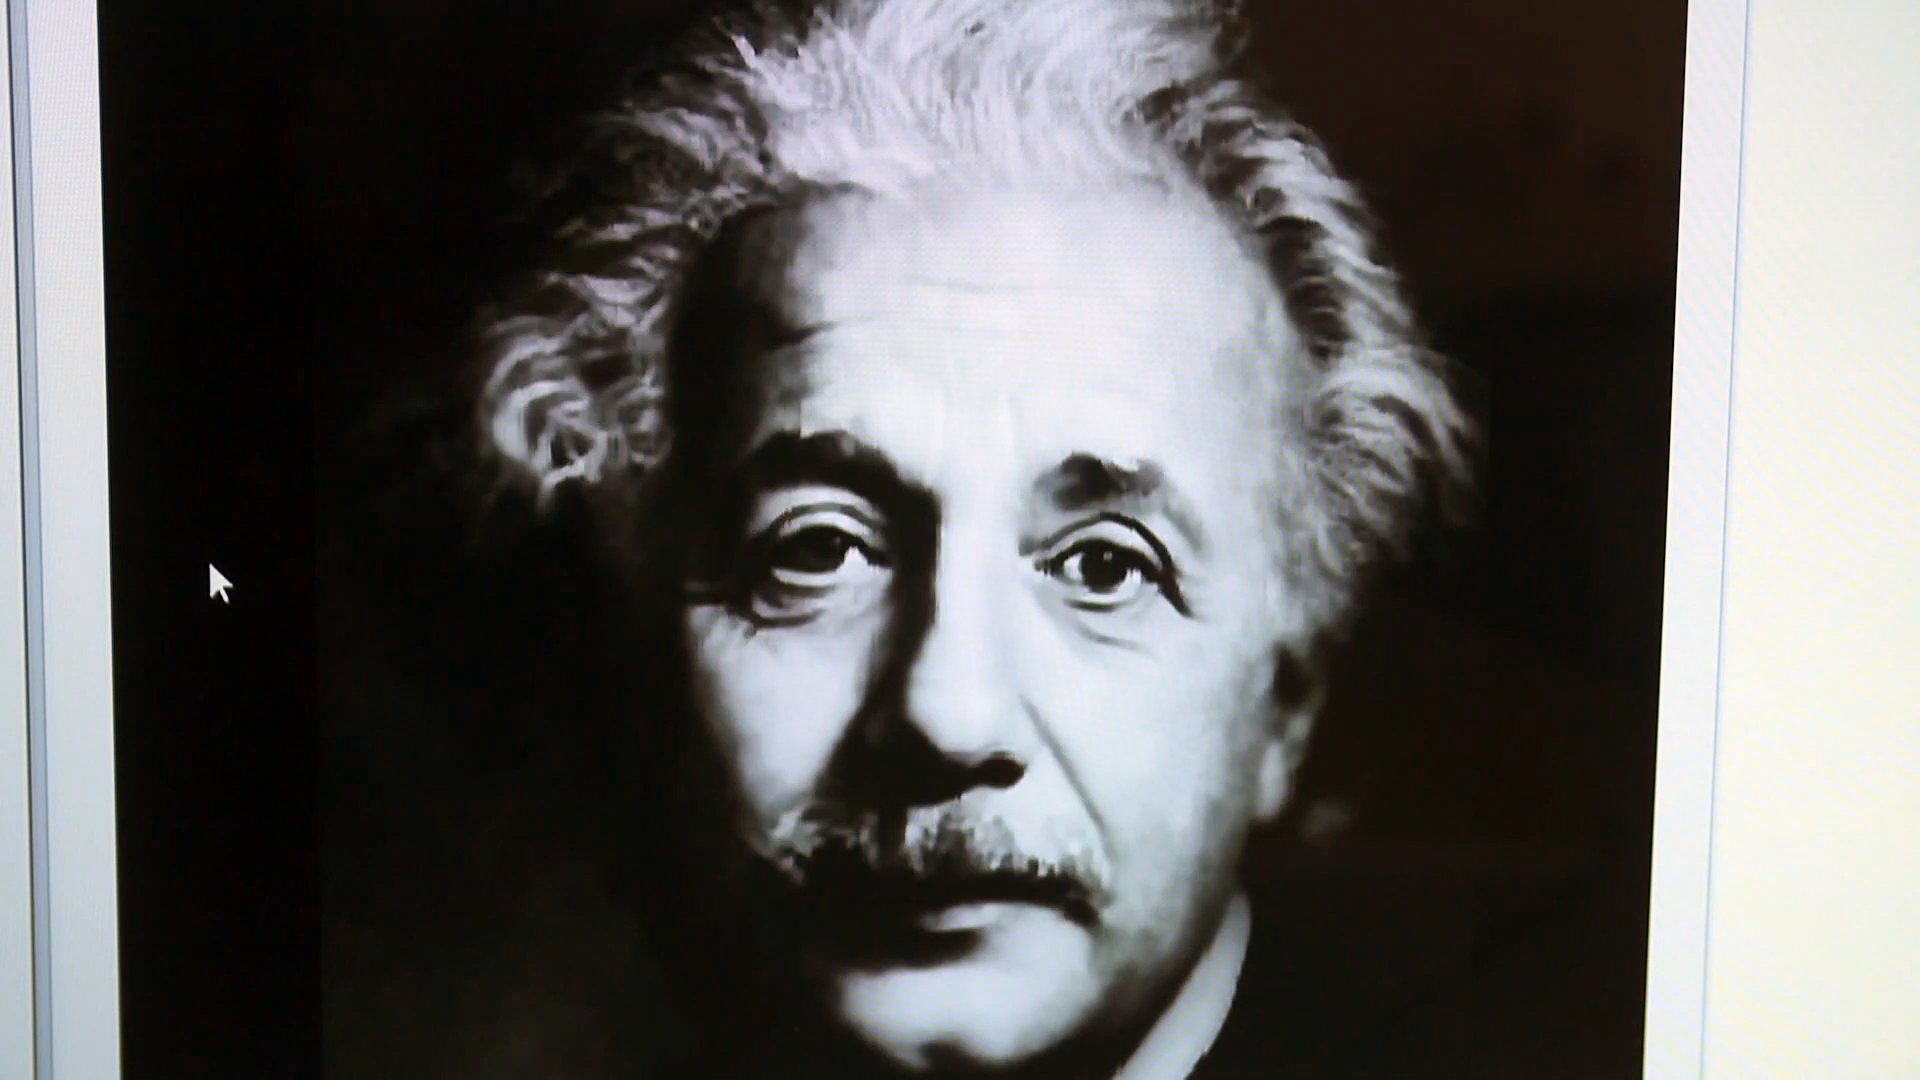 Manipulated image of Albert Einstein